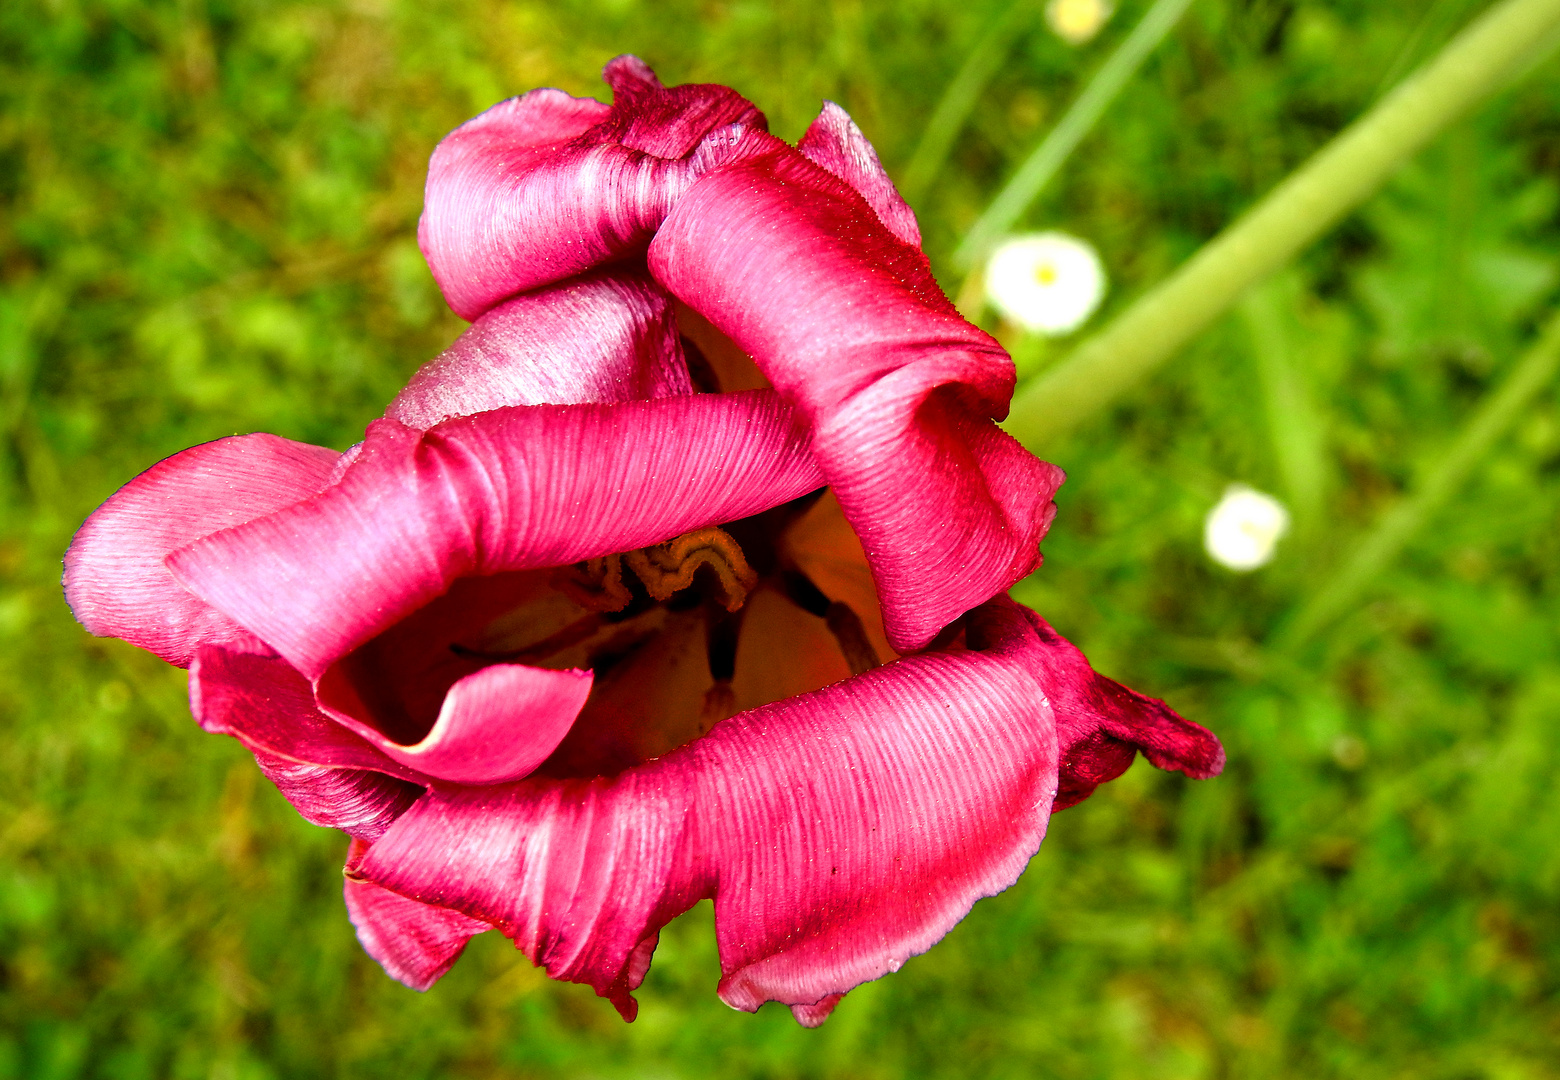 Die Tulpe und ihre Verwandlungsfähigkeit 1